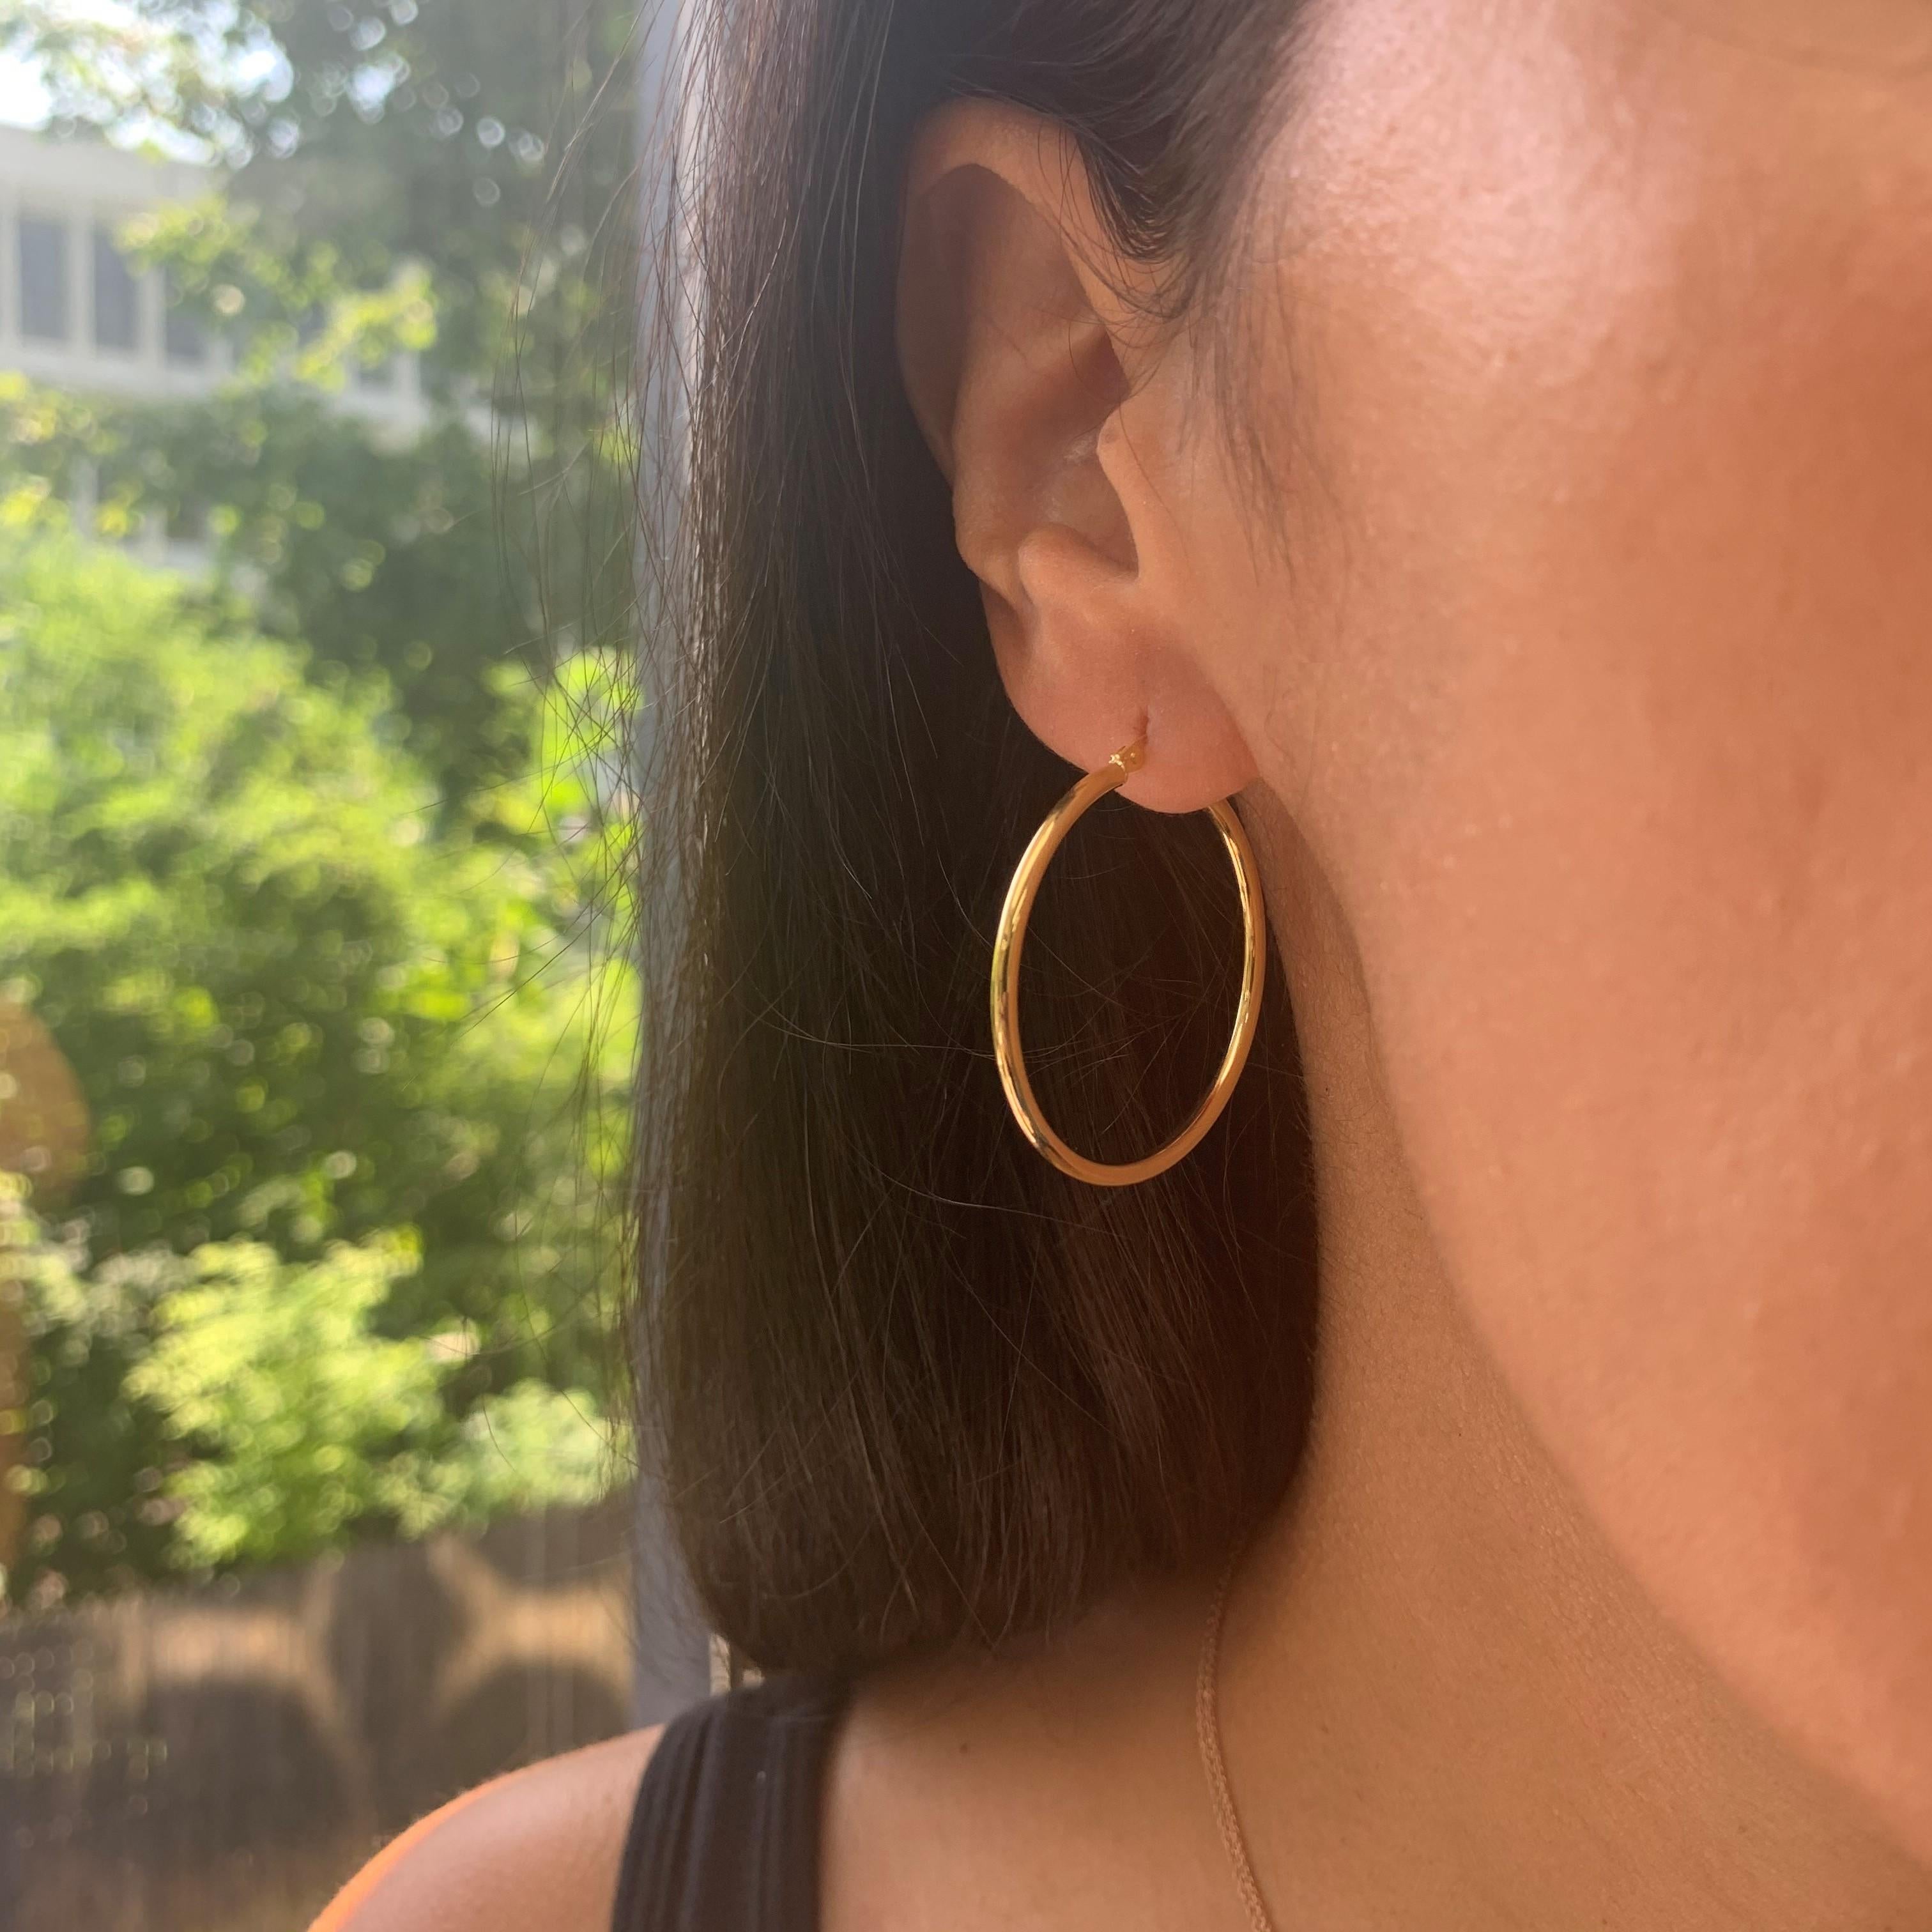 Diese eleganten und stilvollen Ohrringe aus 14 Karat Gelbgold verleihen Ihrem Look den perfekten Glam! Ohrring Messungen sind 2 X 30 MM. 
Hergestellt in Italien. 
1,25